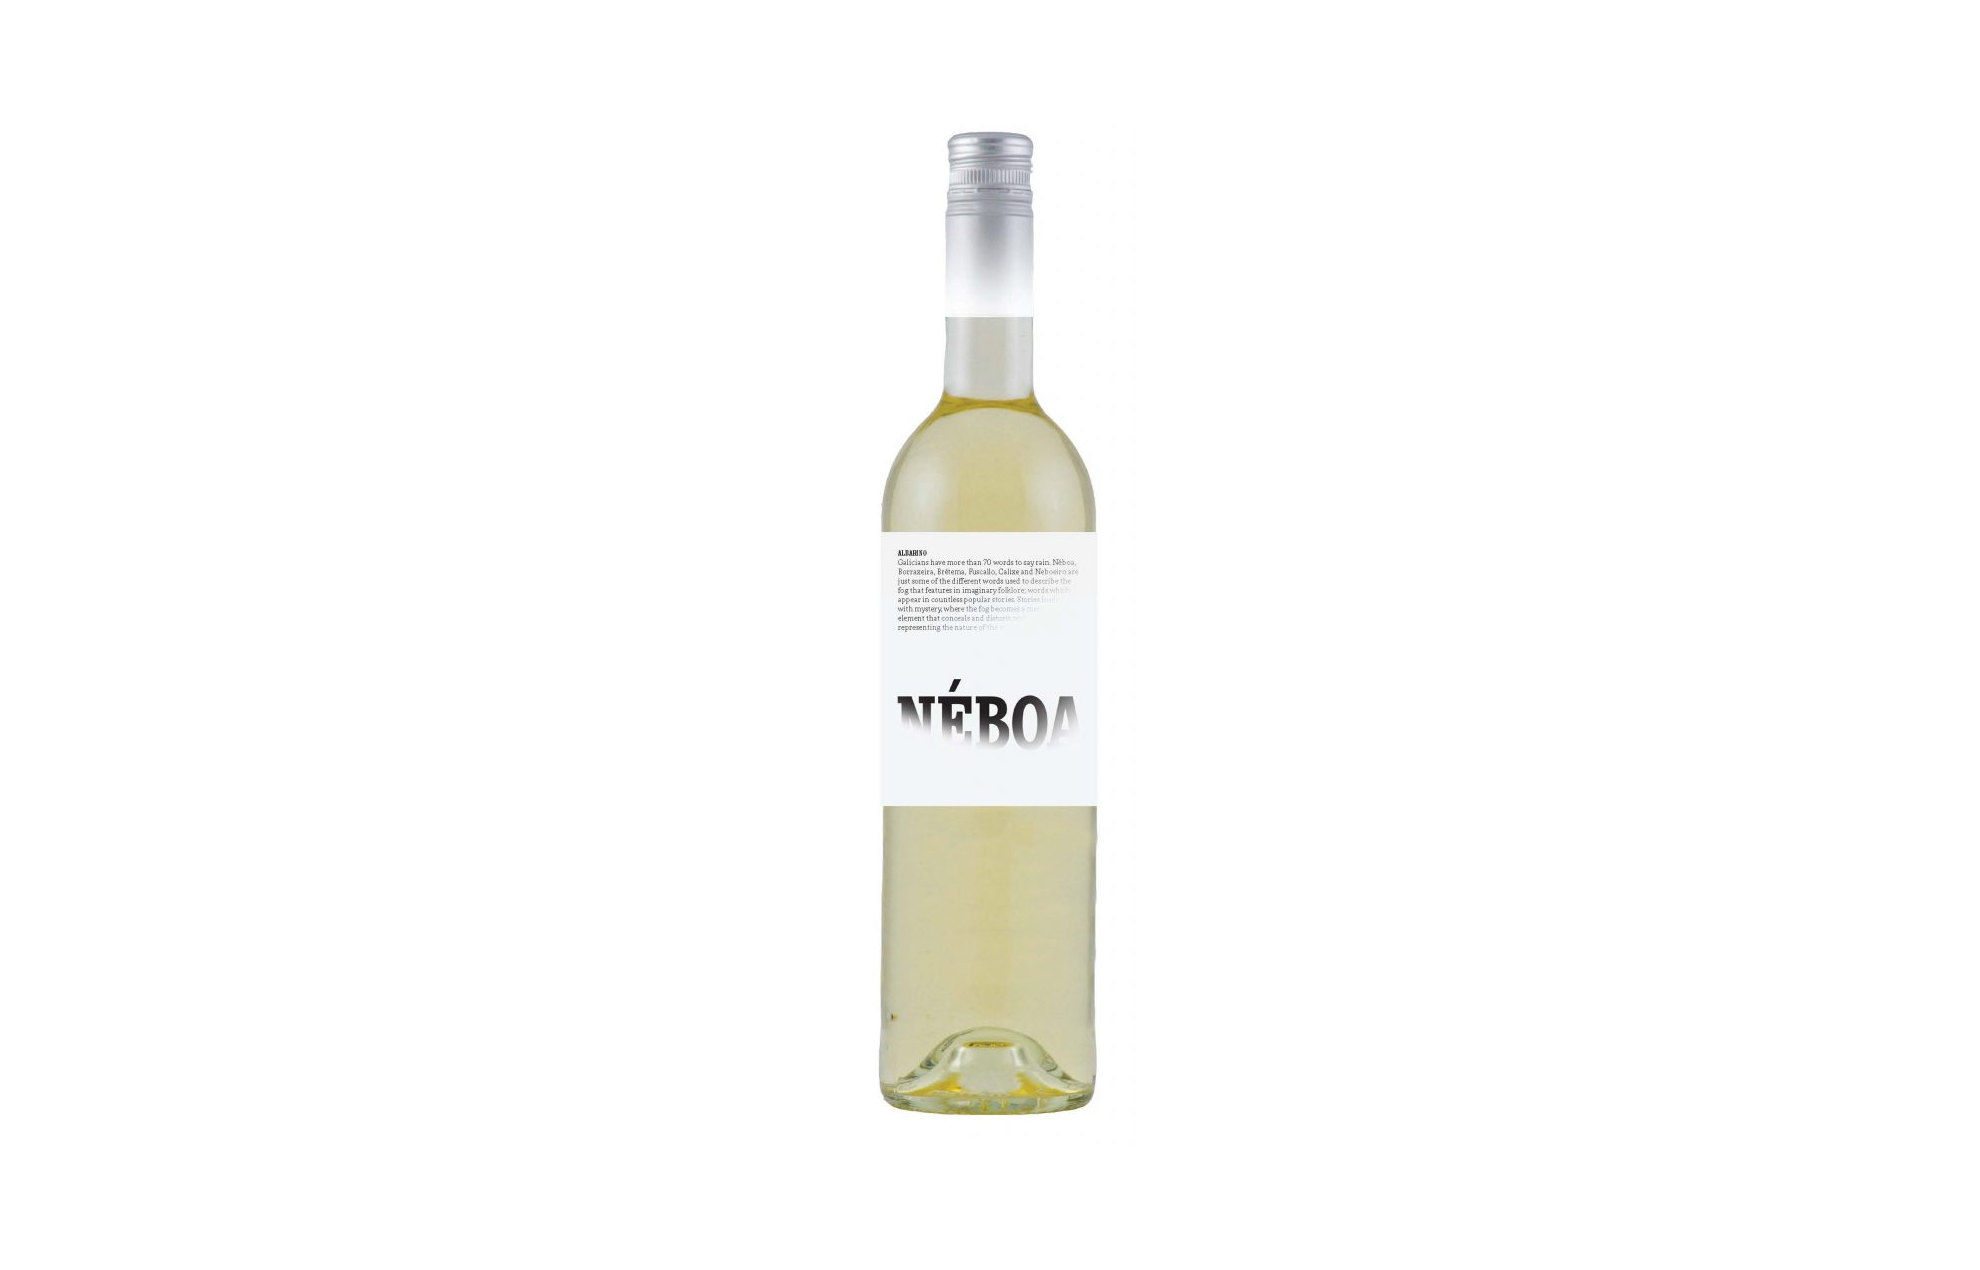 Bottle of NÉBOA 2017 Albariño, Rías Baixas, Spain white wine.